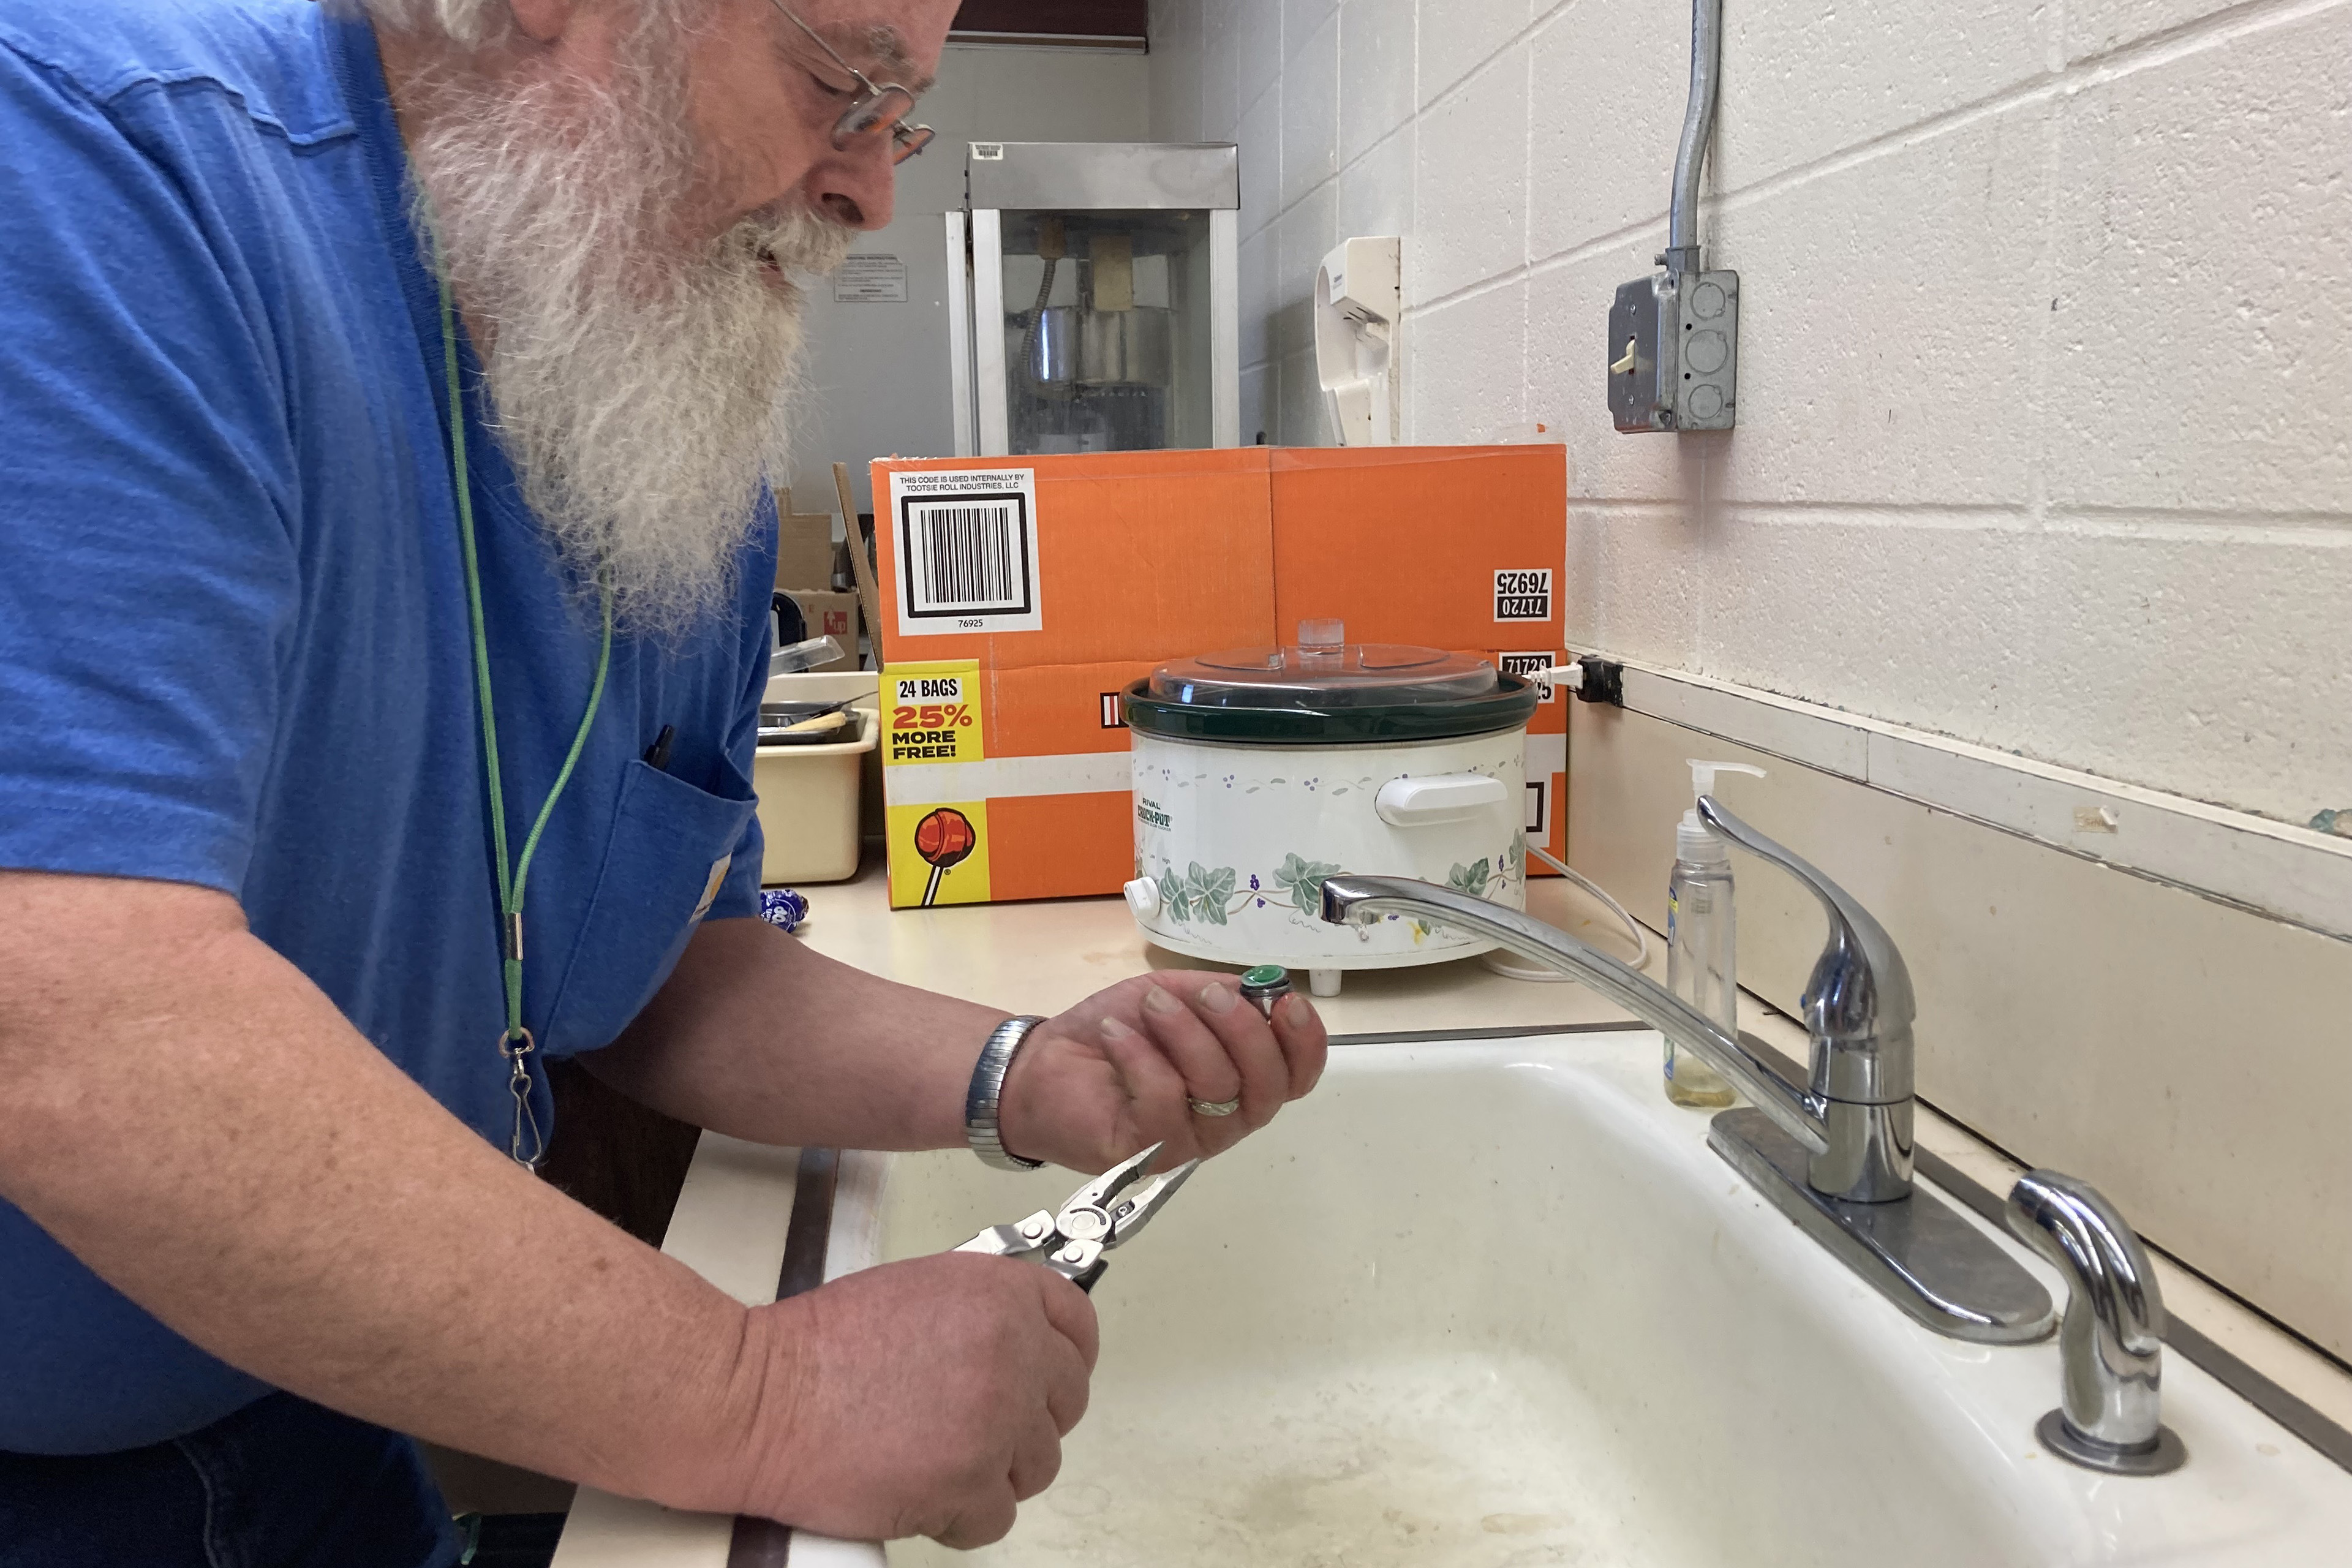 nachrichten Chris Cornelius lehnt sich über ein Waschbecken und untersucht einen Wasserhahn, den er entfernt hat.  In der anderen Hand hält er einen Schraubenschlüssel.